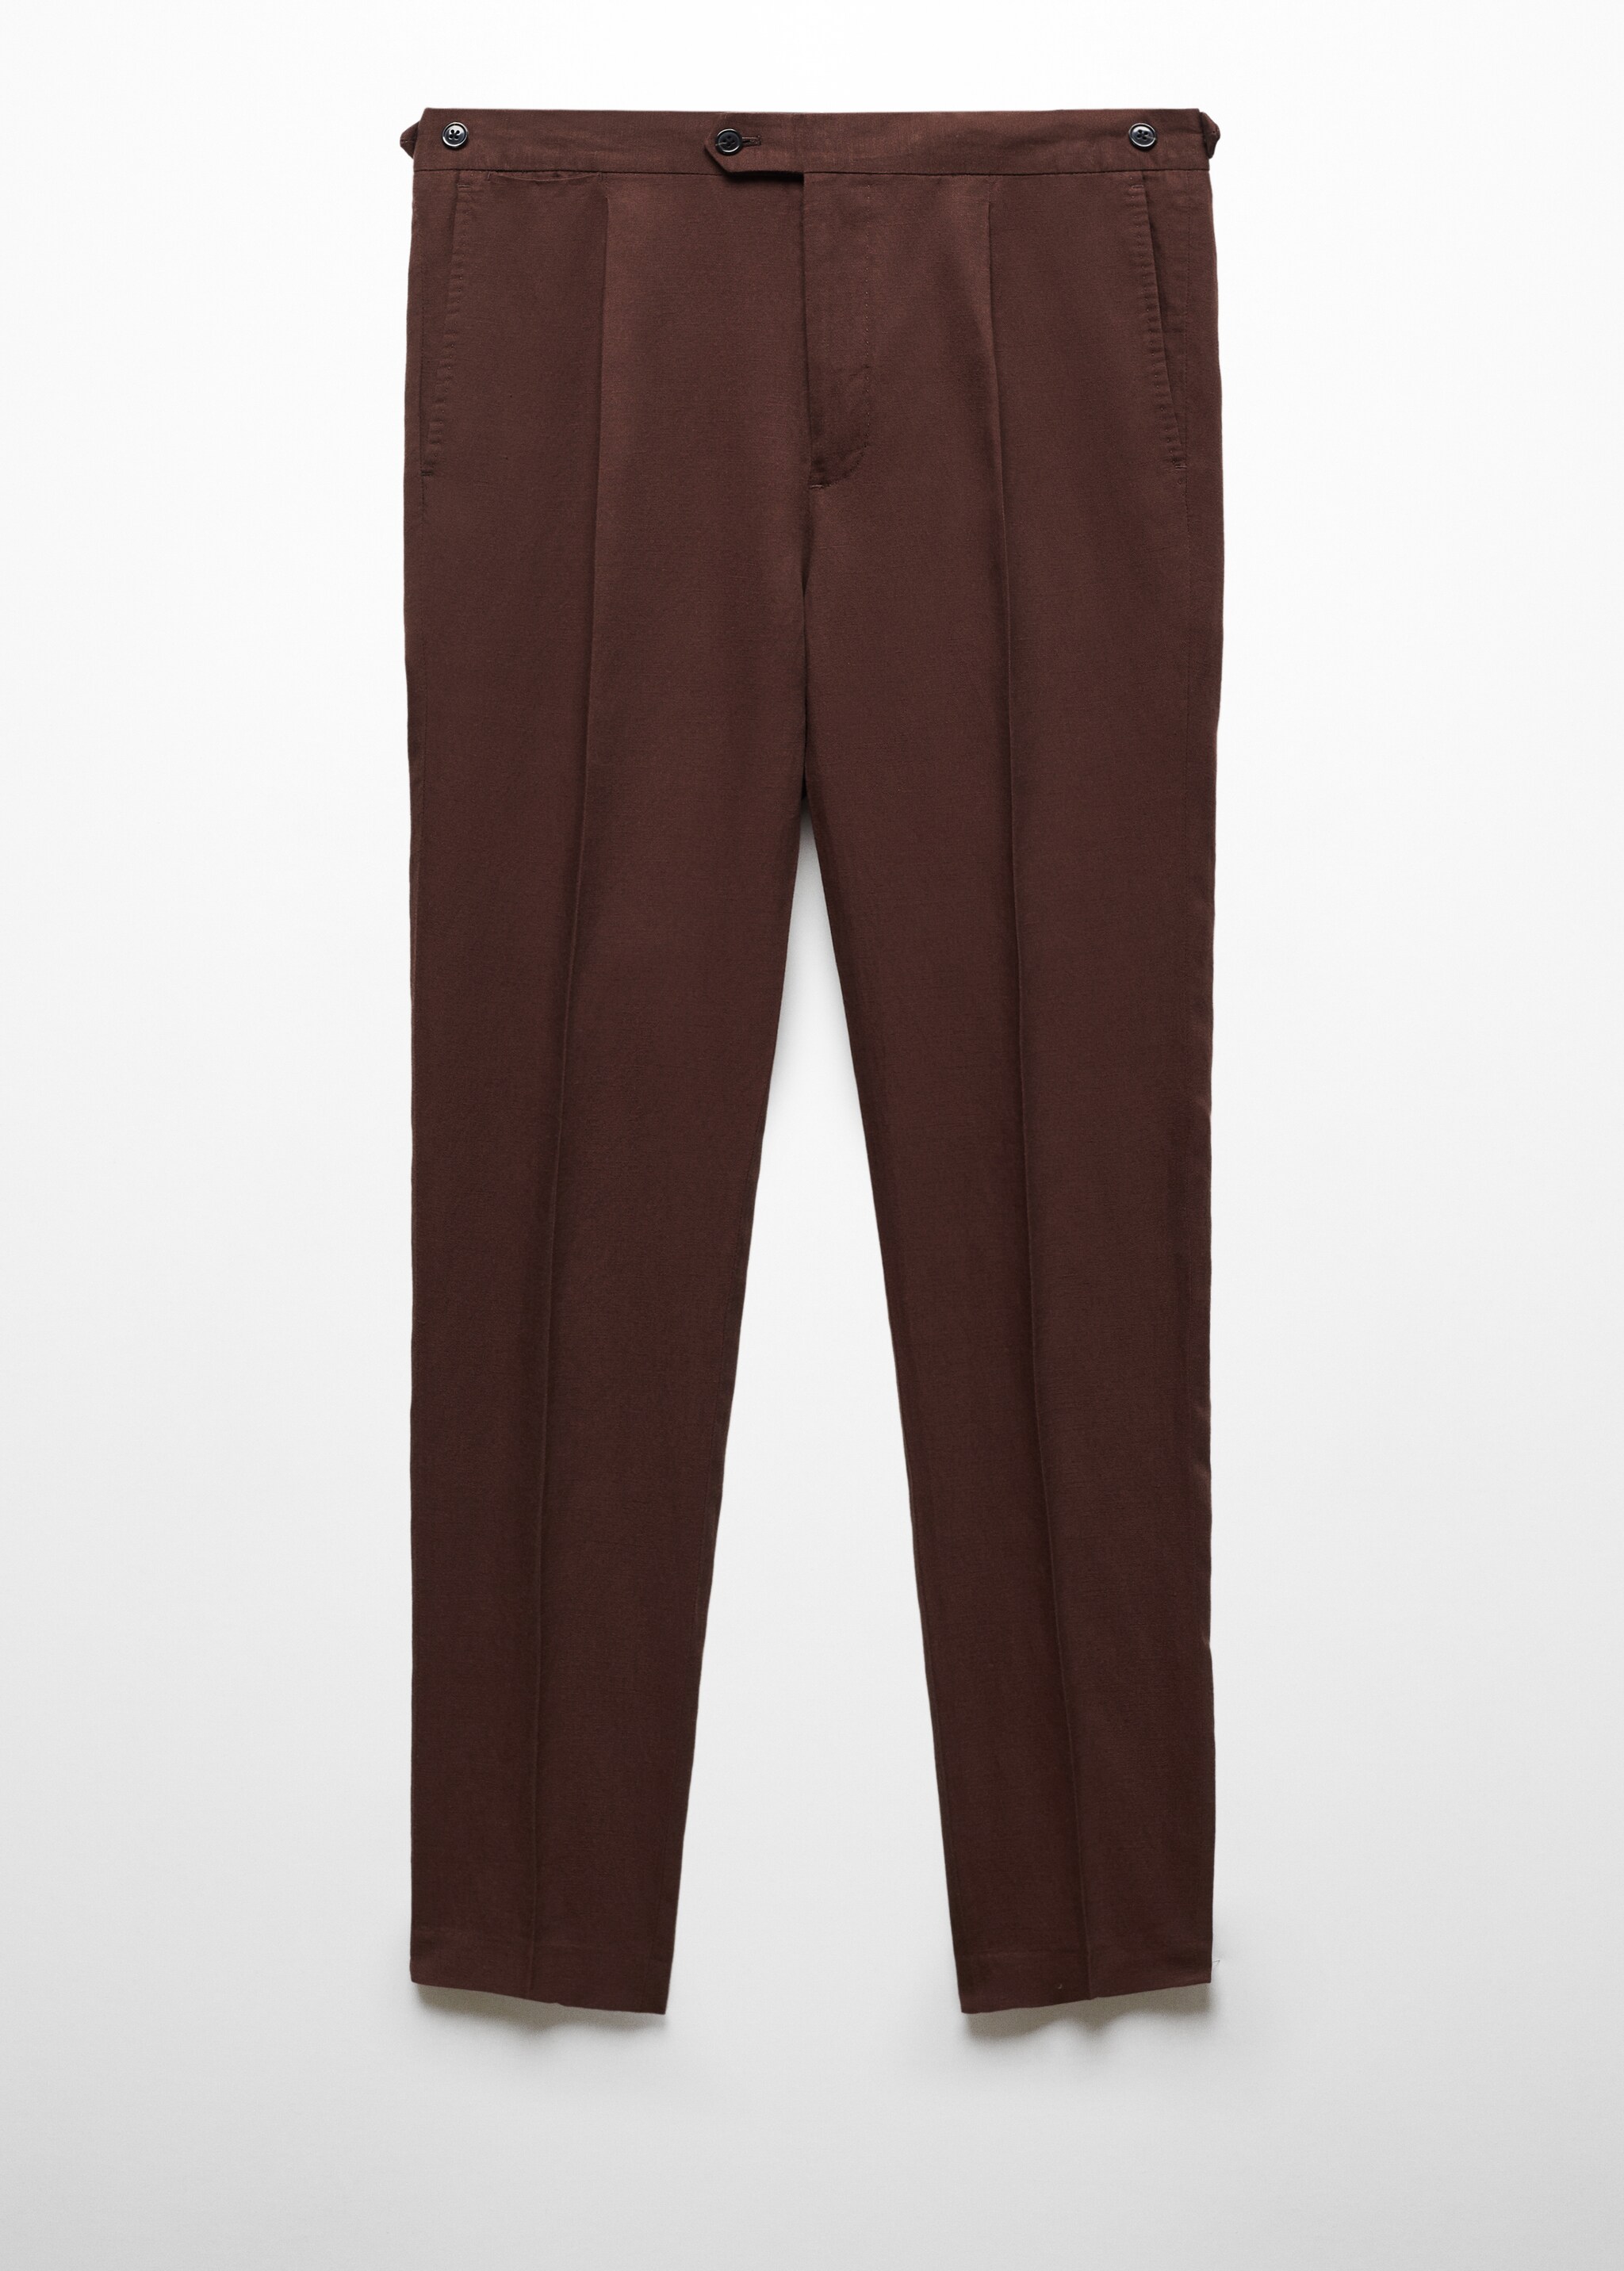 Pantaloni completo slim-fit lino pinces - Articolo senza modello